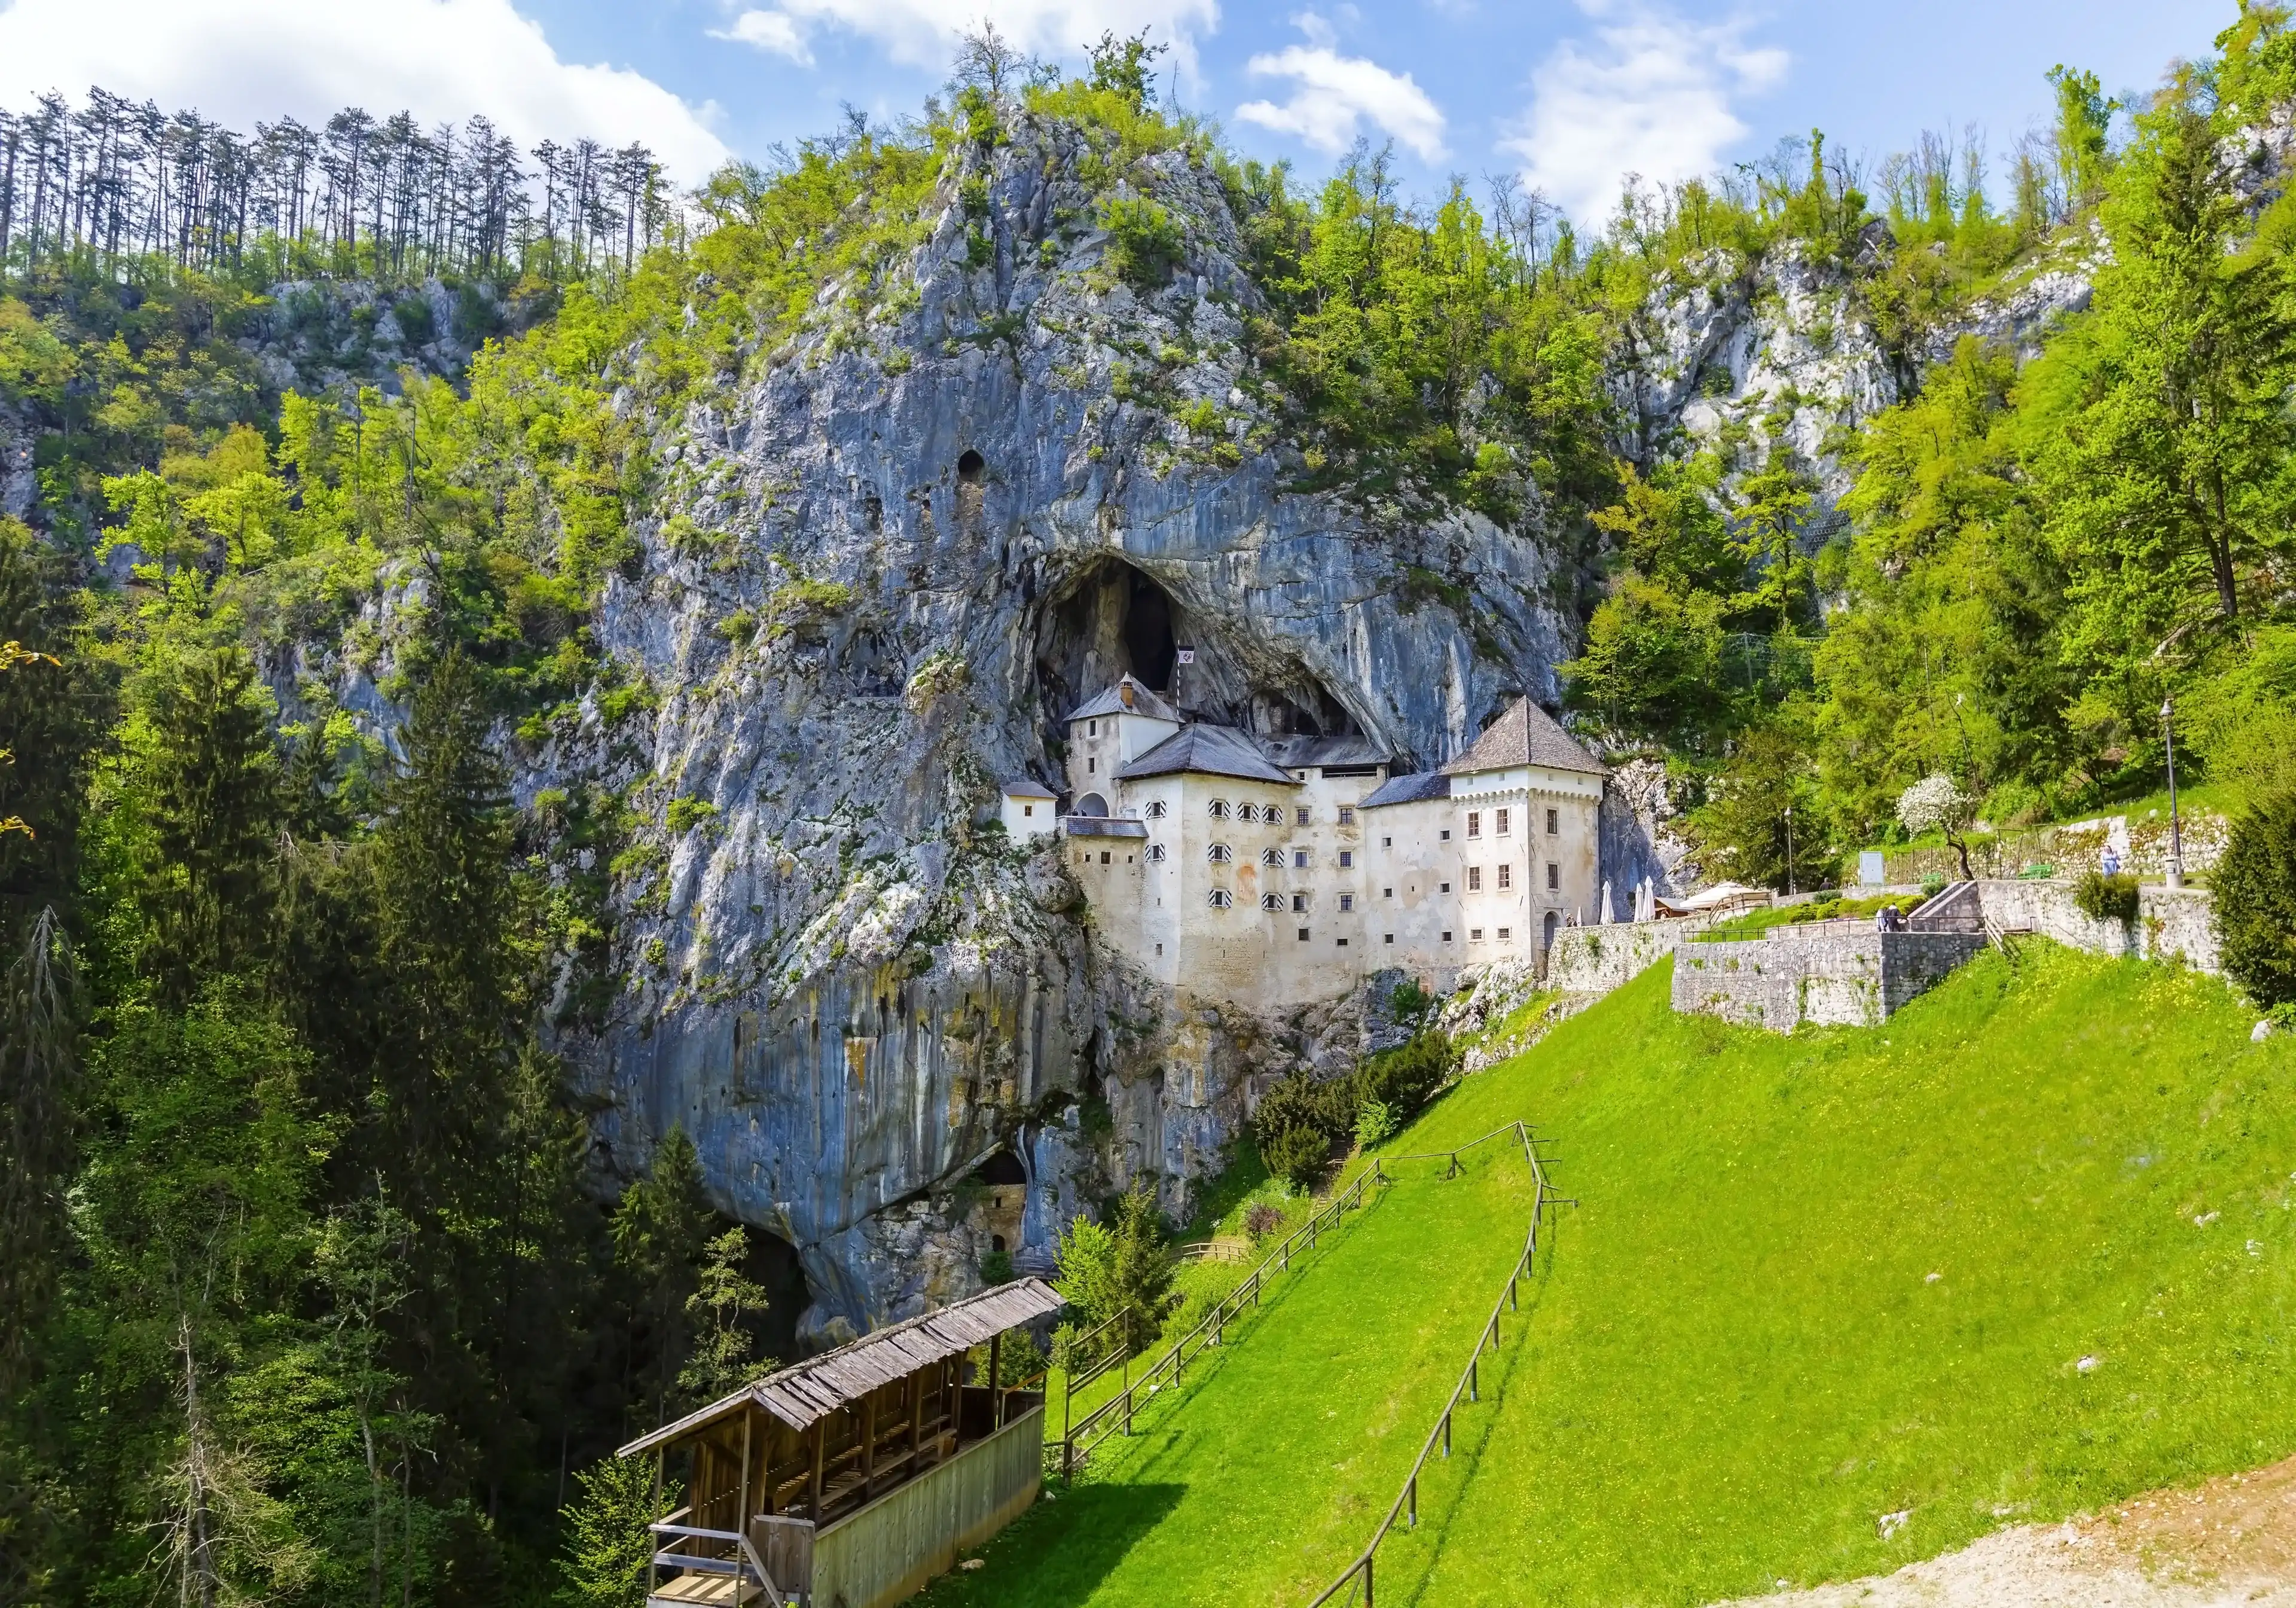 Predjama; castle at the cave mouth in Postojna, Slovenia in springtime 